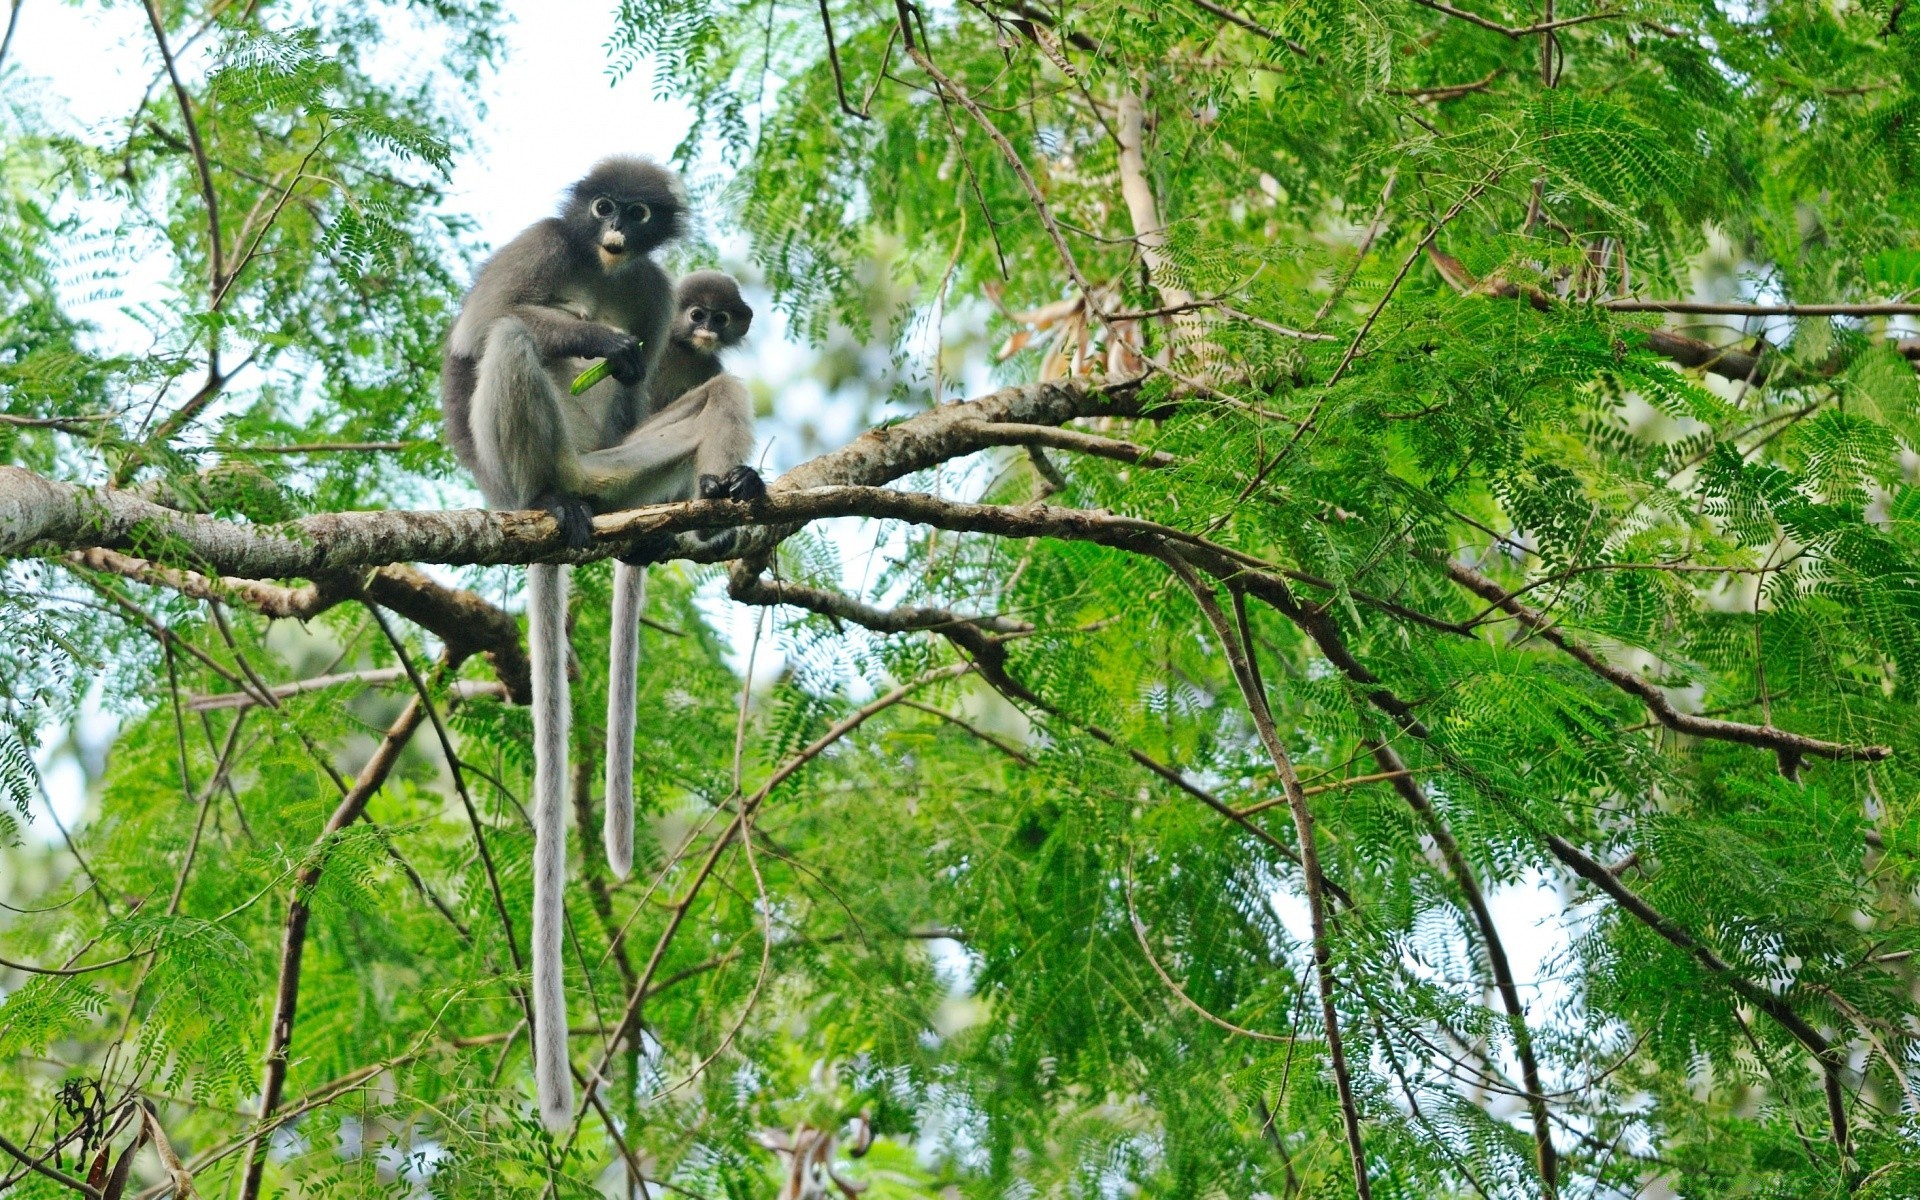 животные обезьяна джунгли дерево древесины природа дикий предстоятель тропический лес парк дикой природы лист тропический животное среды